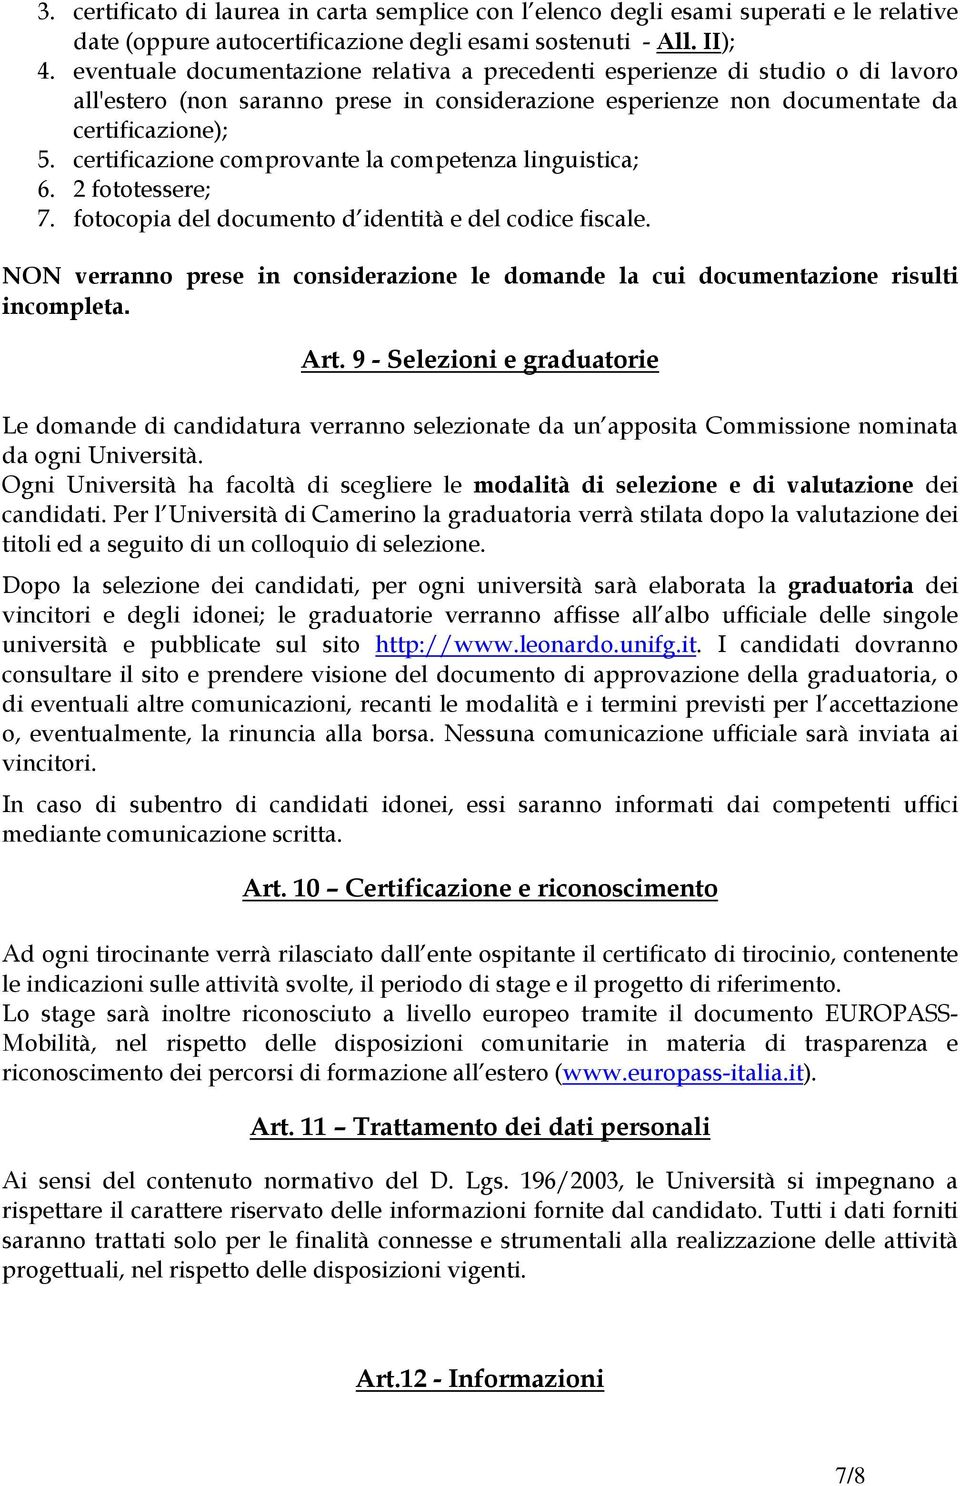 certificazione comprovante la competenza linguistica; 6. 2 fototessere; 7. fotocopia del documento d identità e del codice fiscale.